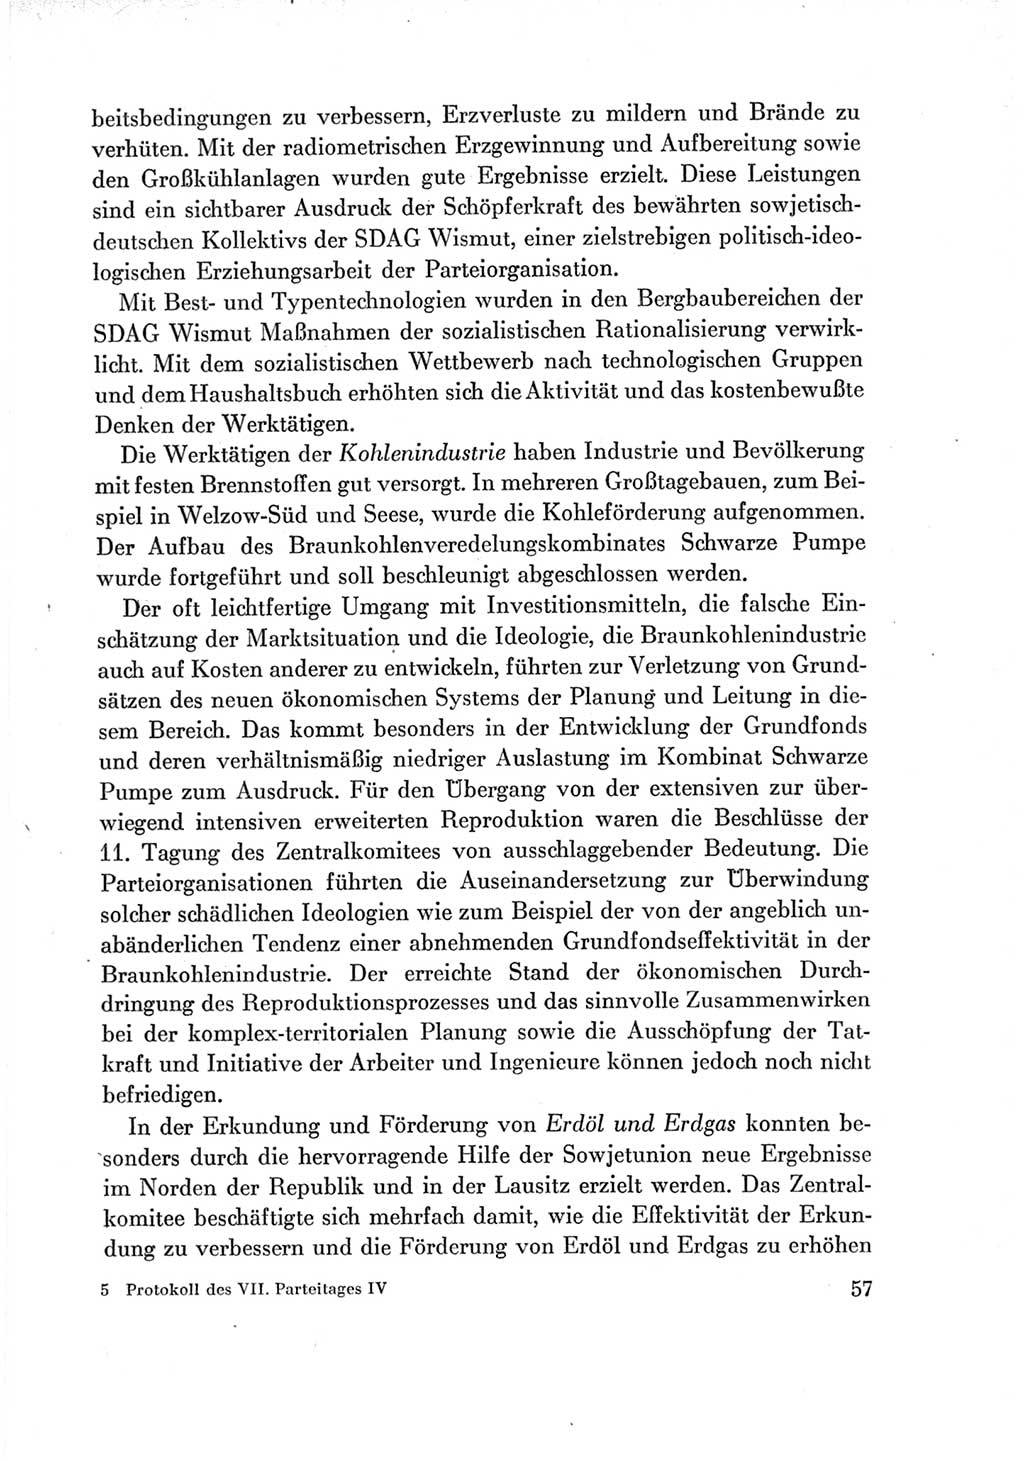 Protokoll der Verhandlungen des Ⅶ. Parteitages der Sozialistischen Einheitspartei Deutschlands (SED) [Deutsche Demokratische Republik (DDR)] 1967, Band Ⅳ, Seite 57 (Prot. Verh. Ⅶ. PT SED DDR 1967, Bd. Ⅳ, S. 57)